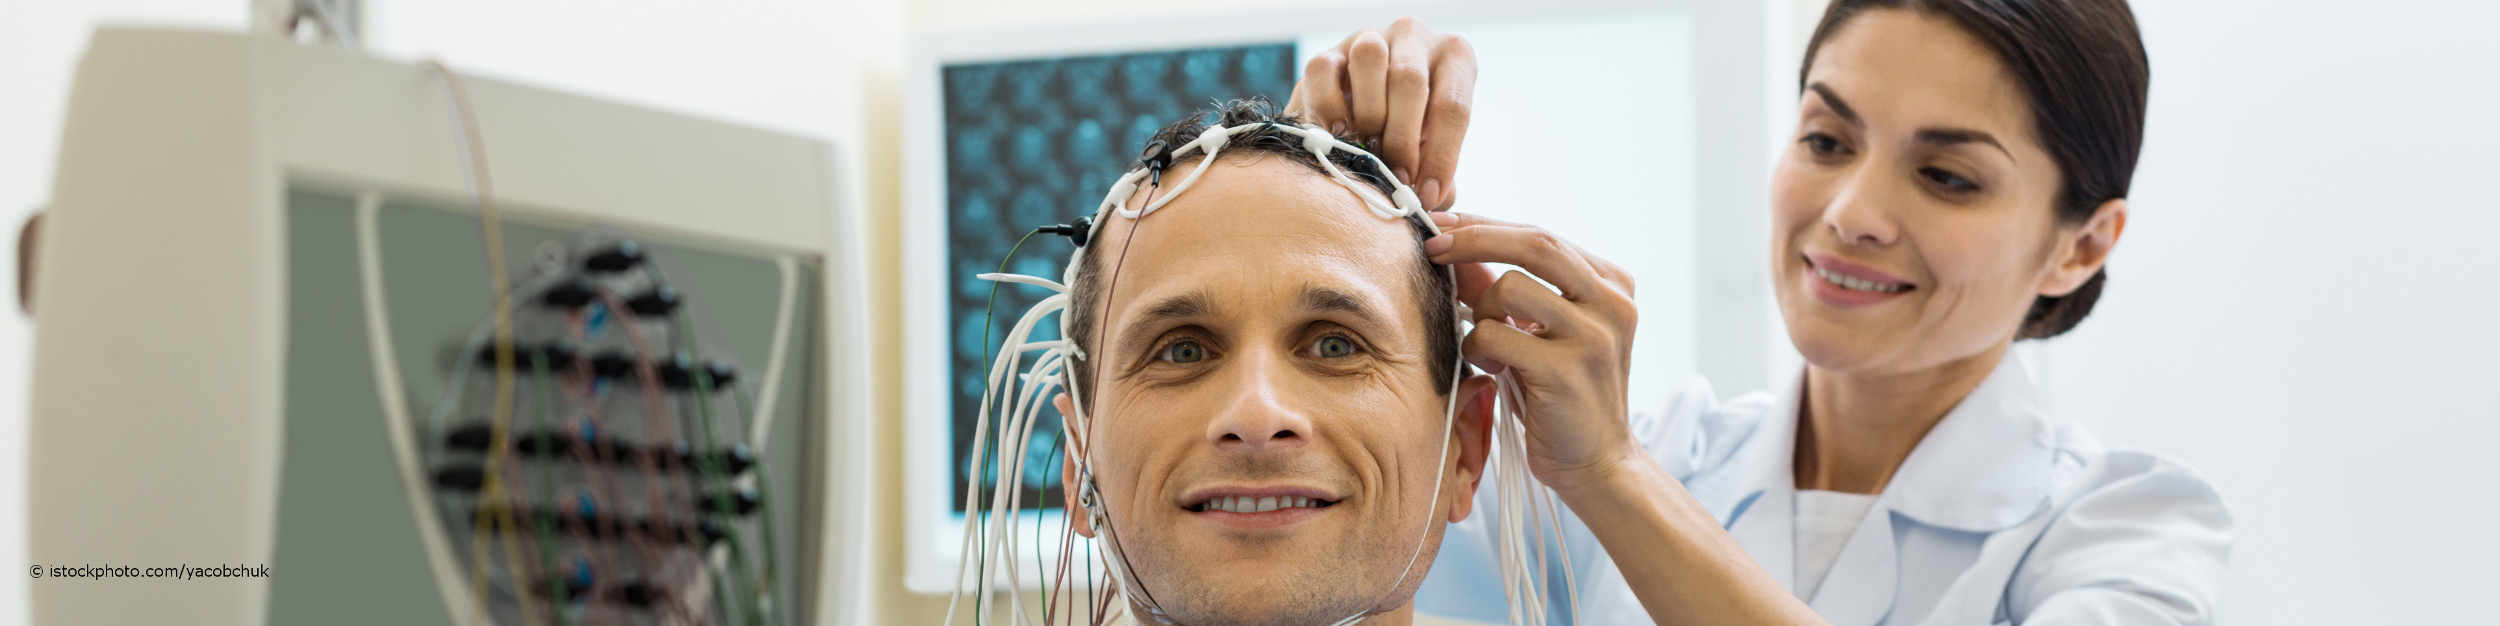 Auf DocInsider registrierte Ärztin legt Mann die Elektroden für das EEG an